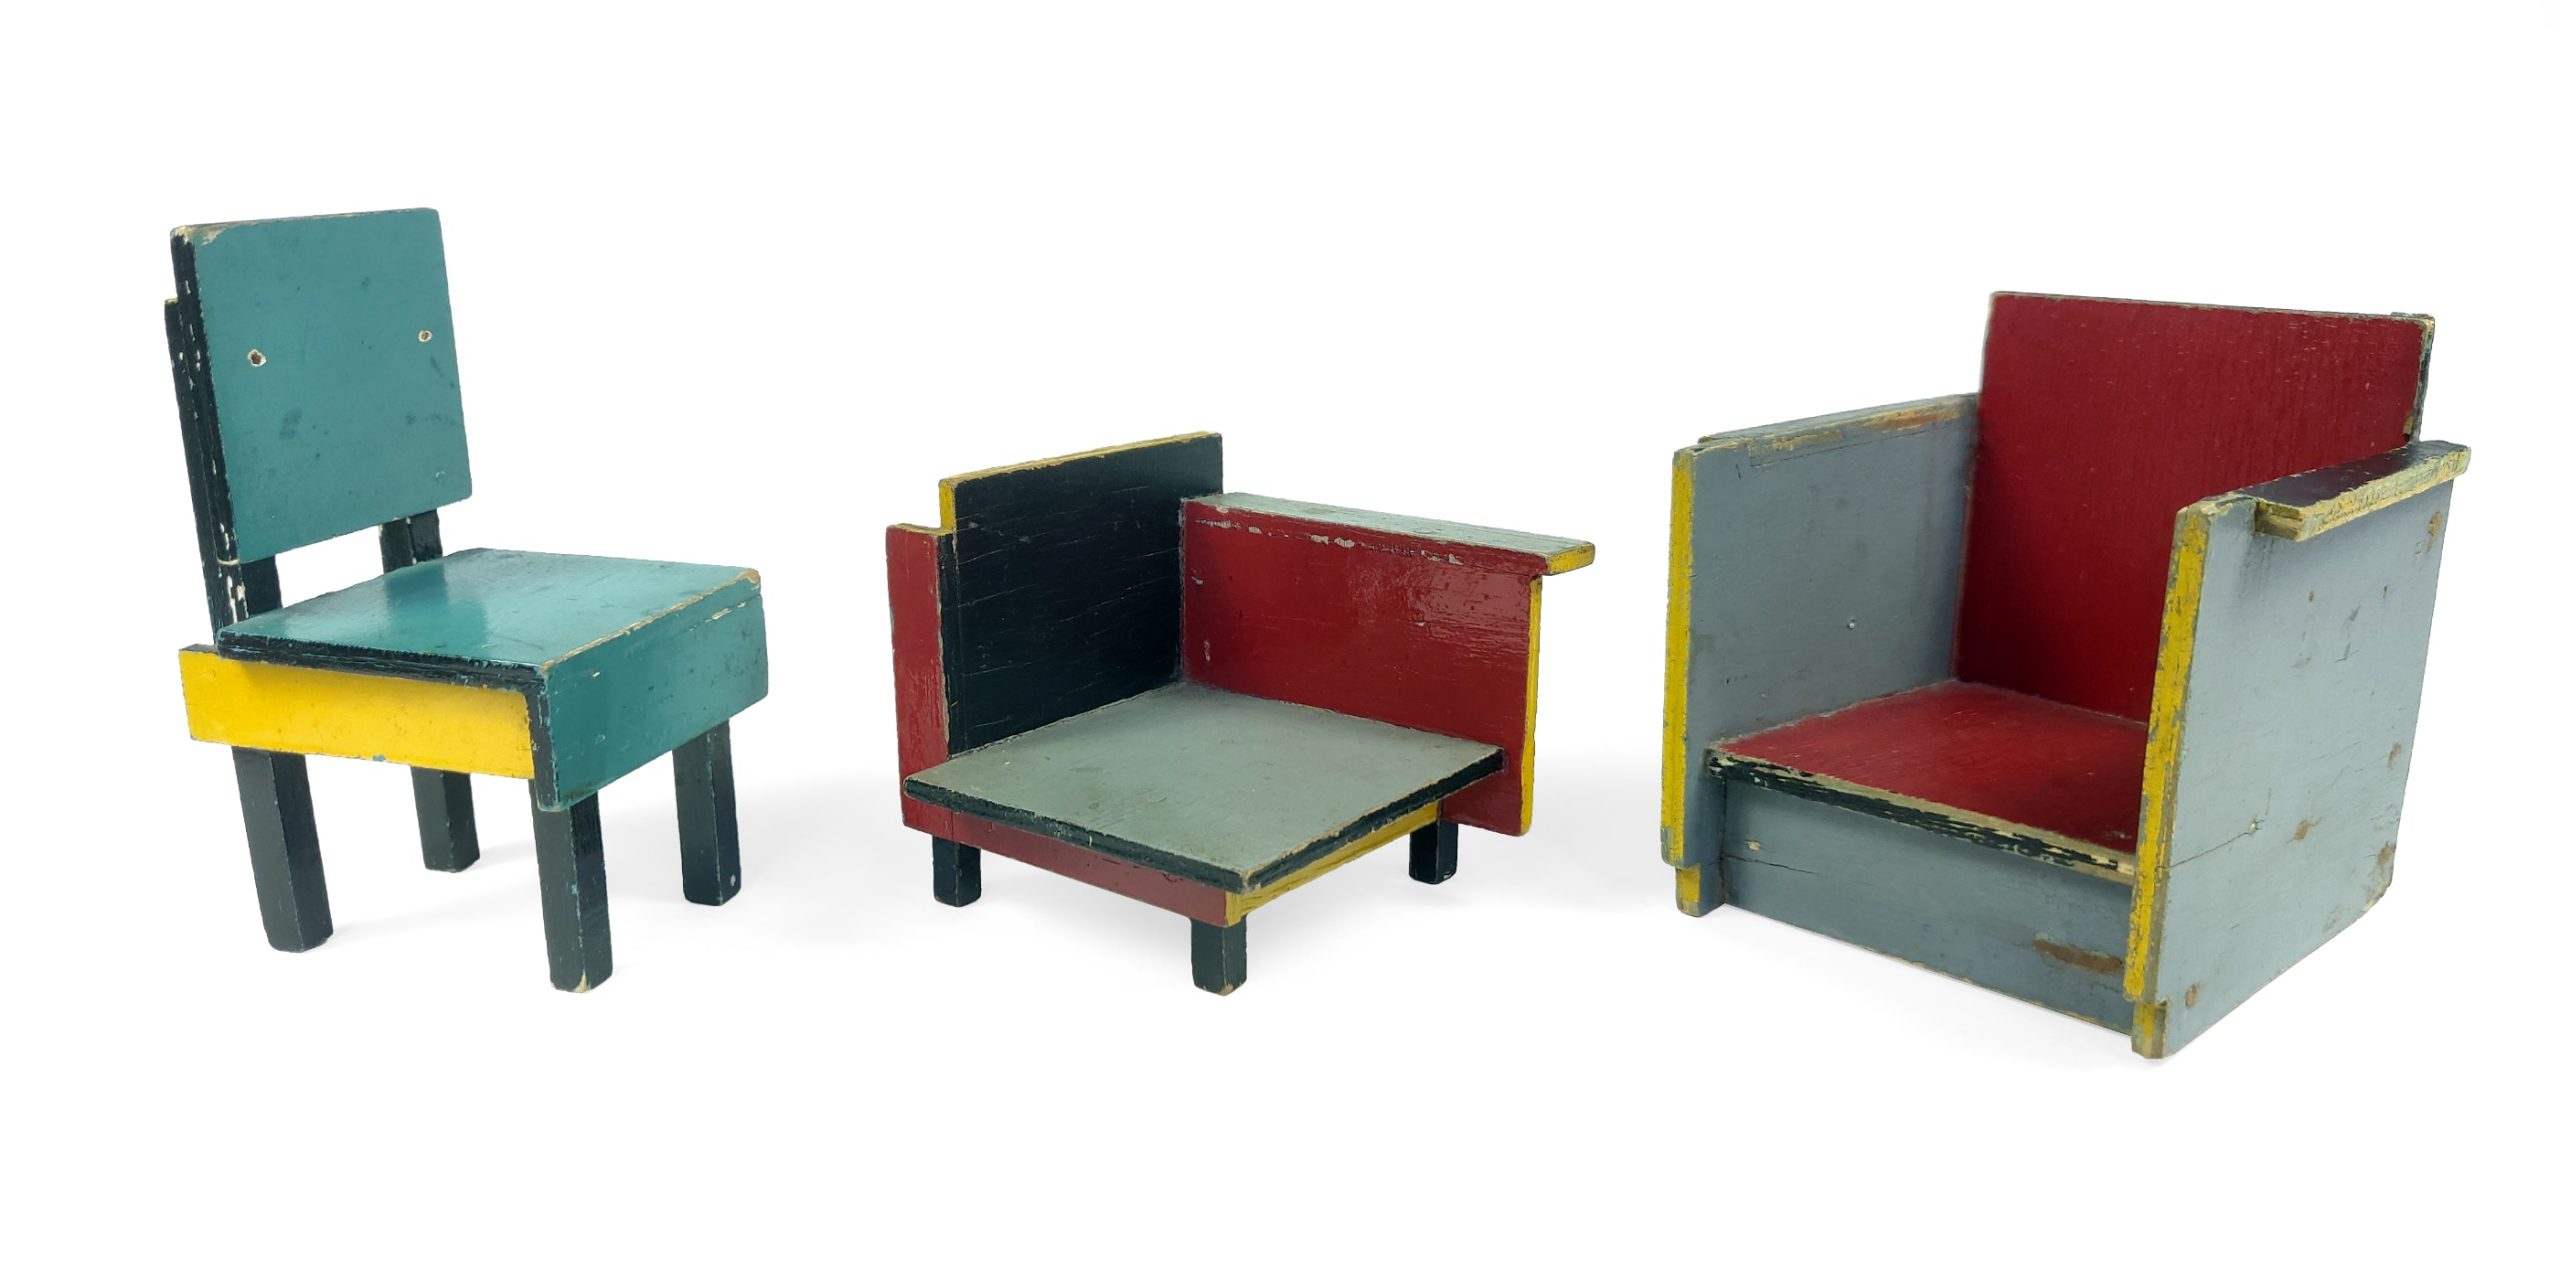 Drie poppenhuisstoeltjes van ado speelgoed in twee verschillende kleurstellingen